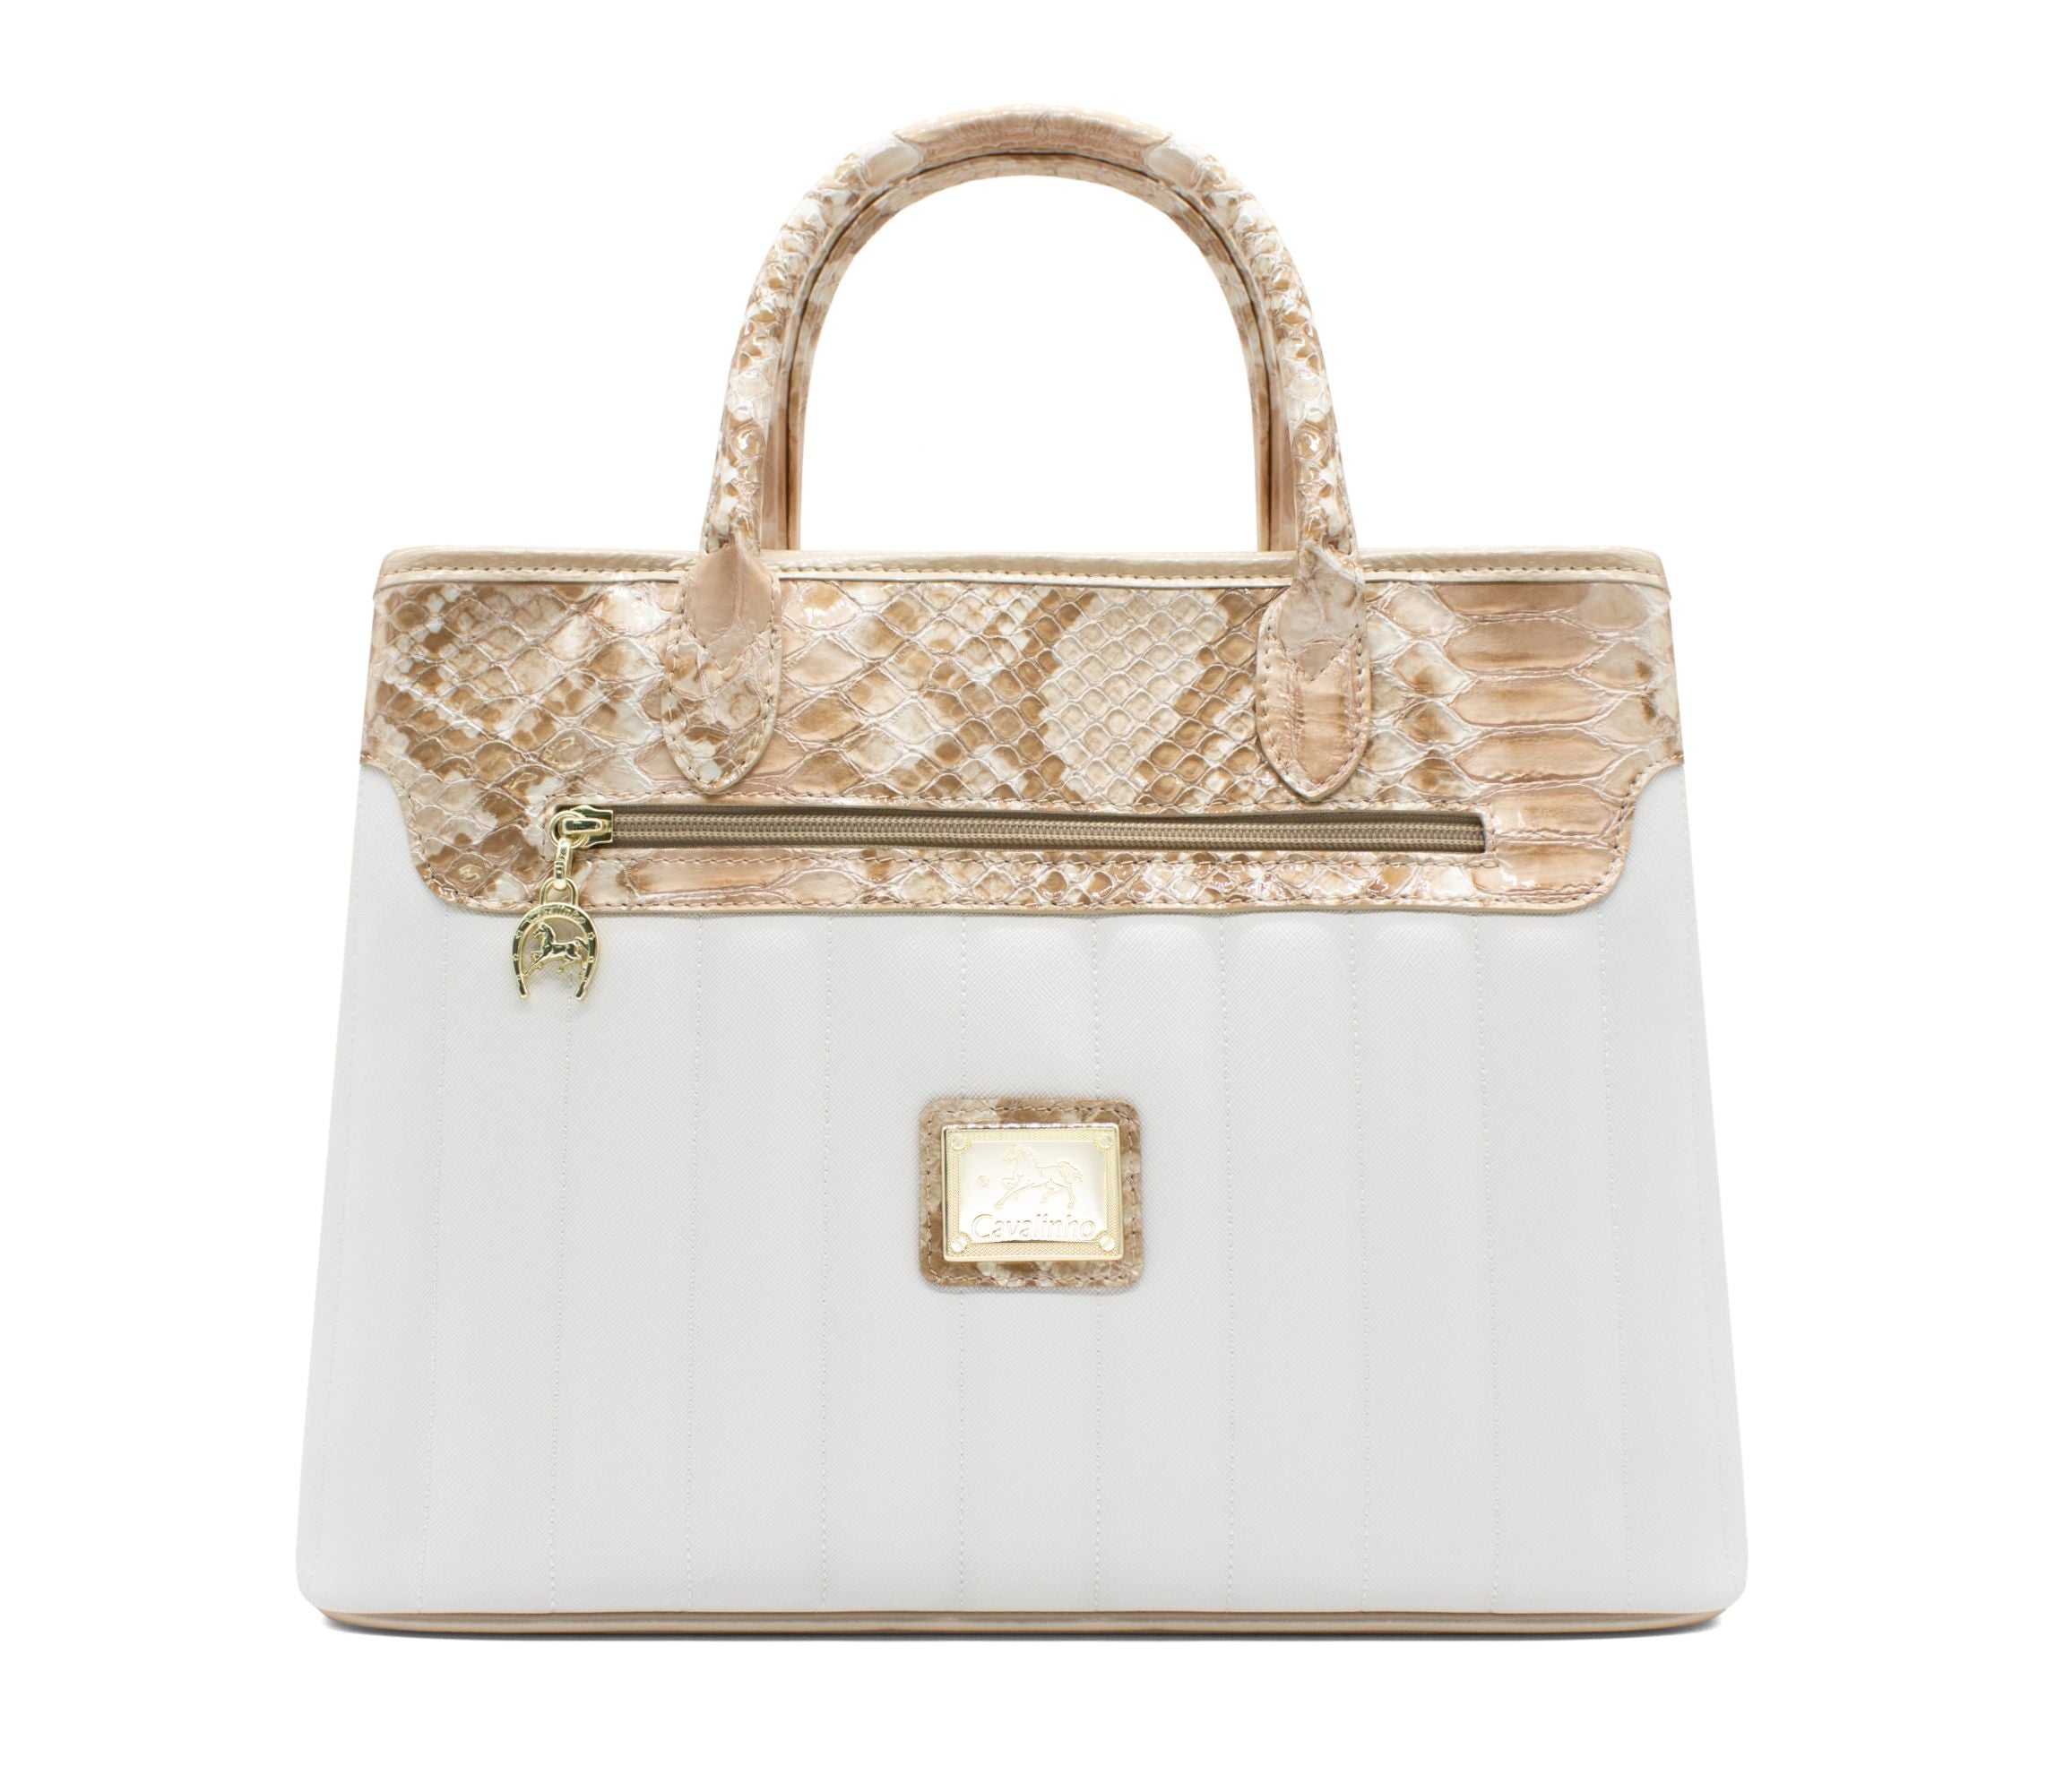 Cavalinho Grace Handbag SKU 18250469.05 #color_Beige / White